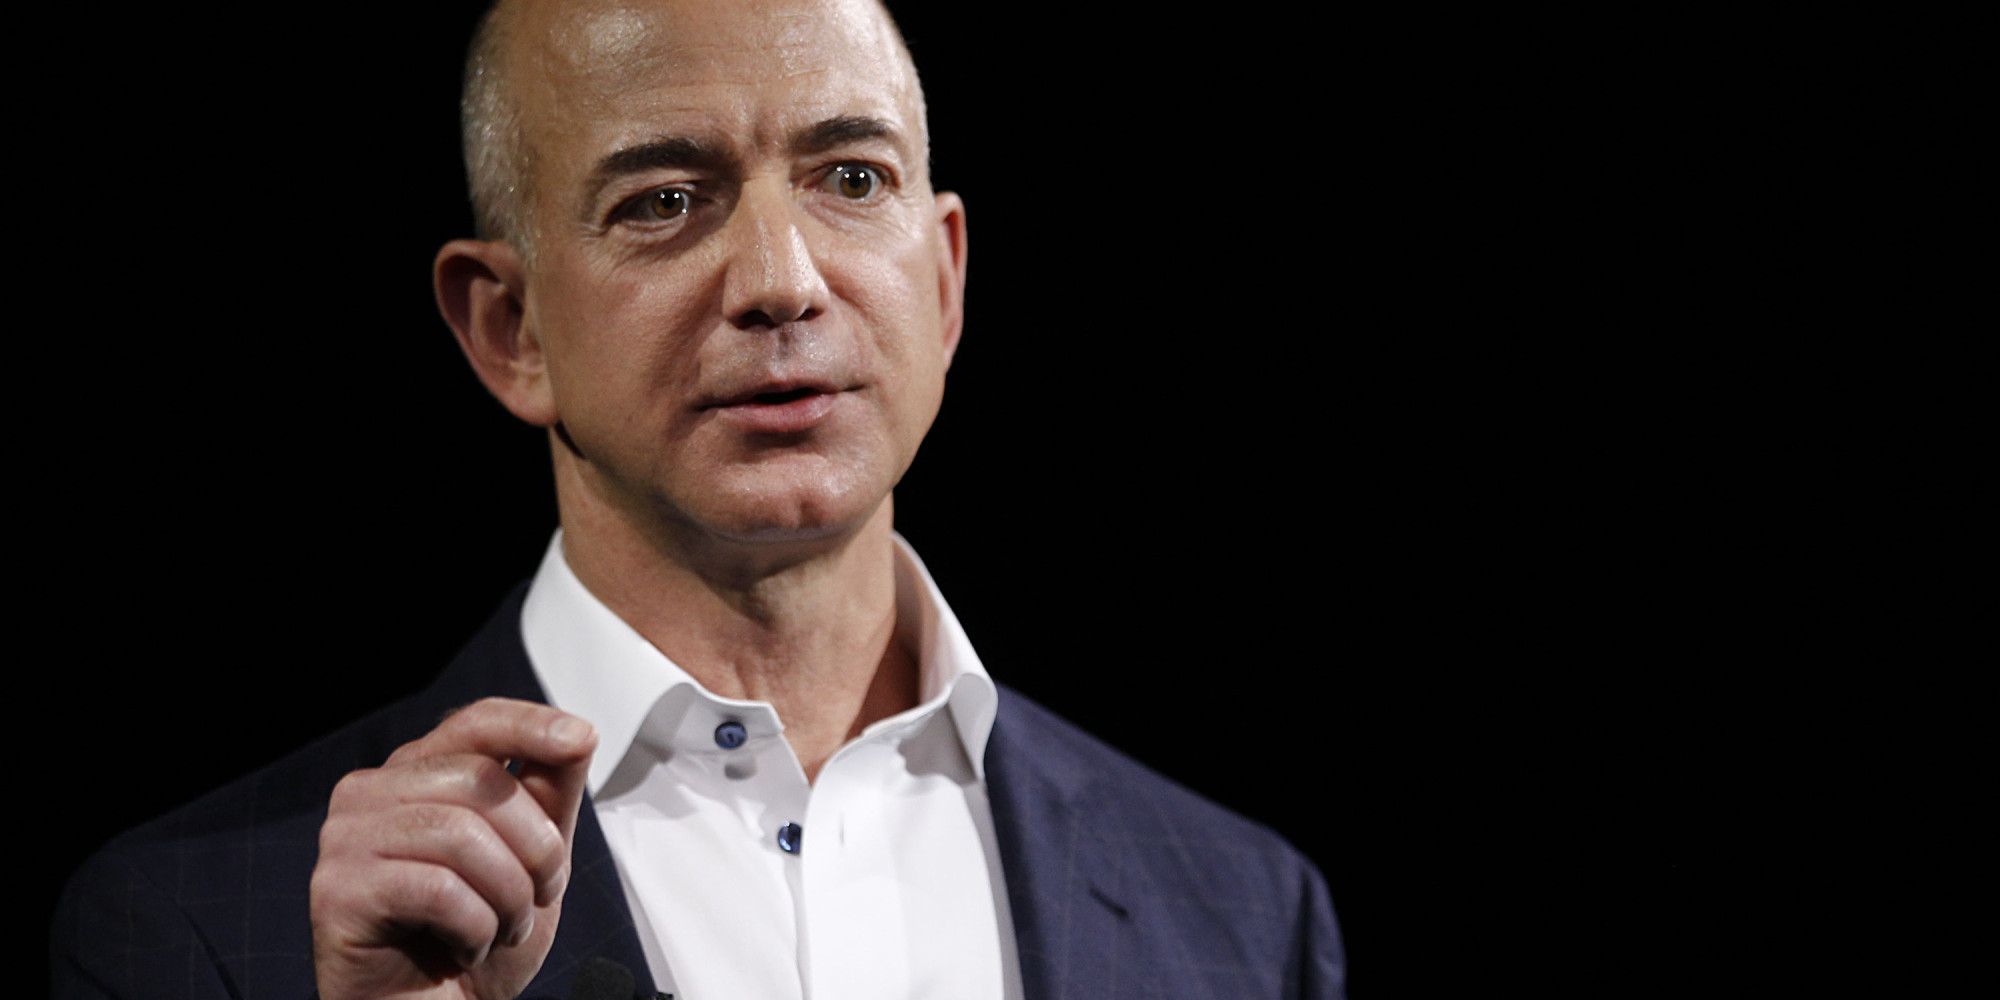 Amazon’s Device Chief Will Reportedly Take Over Jeff Bezos’s Blue Origin